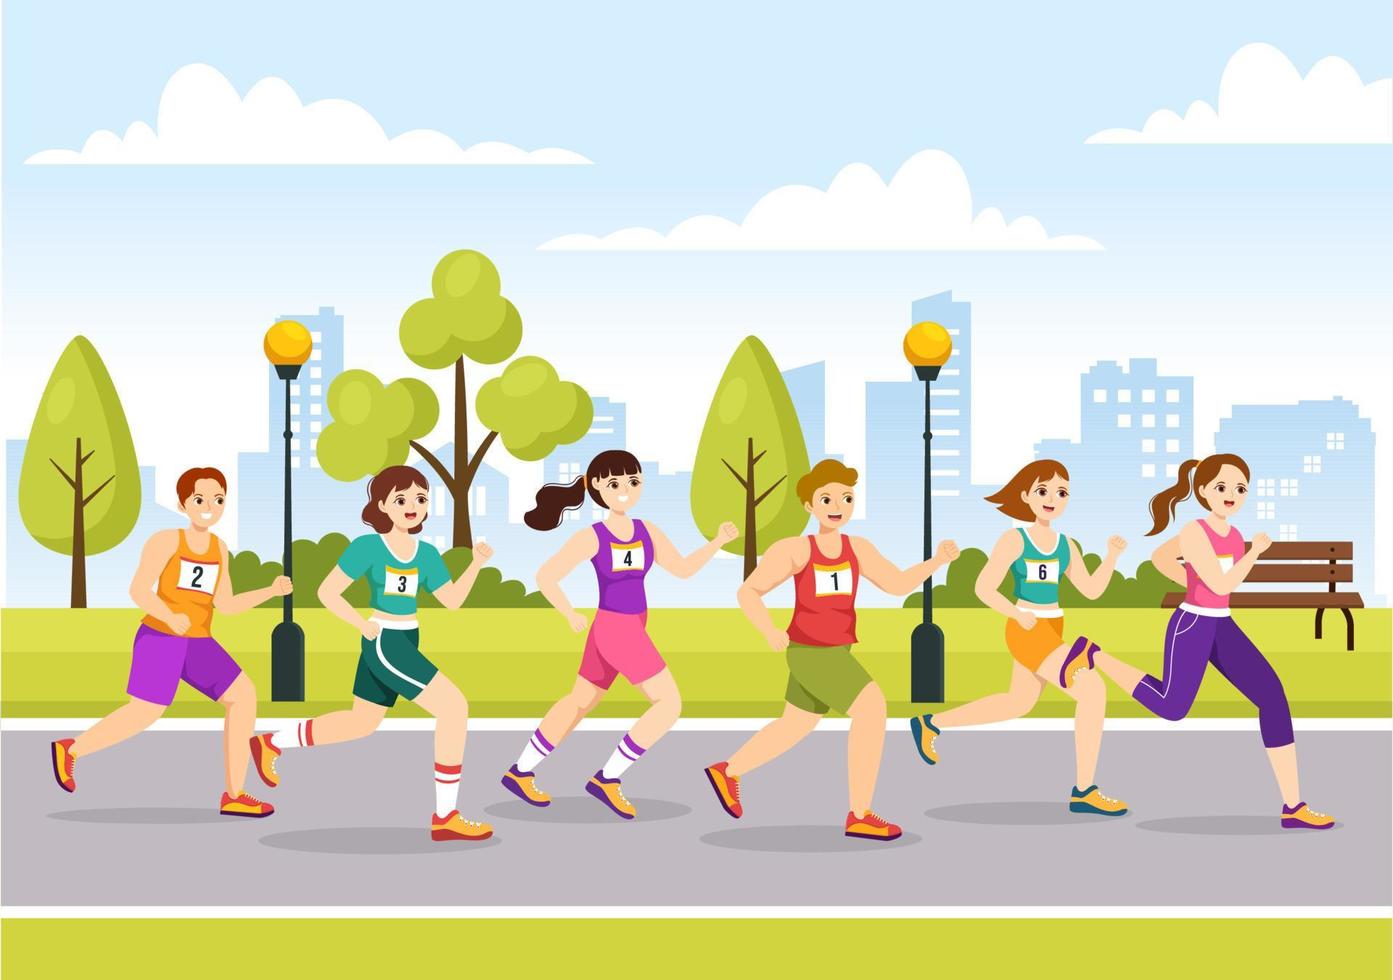 ilustración de carrera de maratón con gente corriendo, trotando en un torneo deportivo y corriendo para llegar a la línea de meta en una plantilla plana dibujada a mano vector